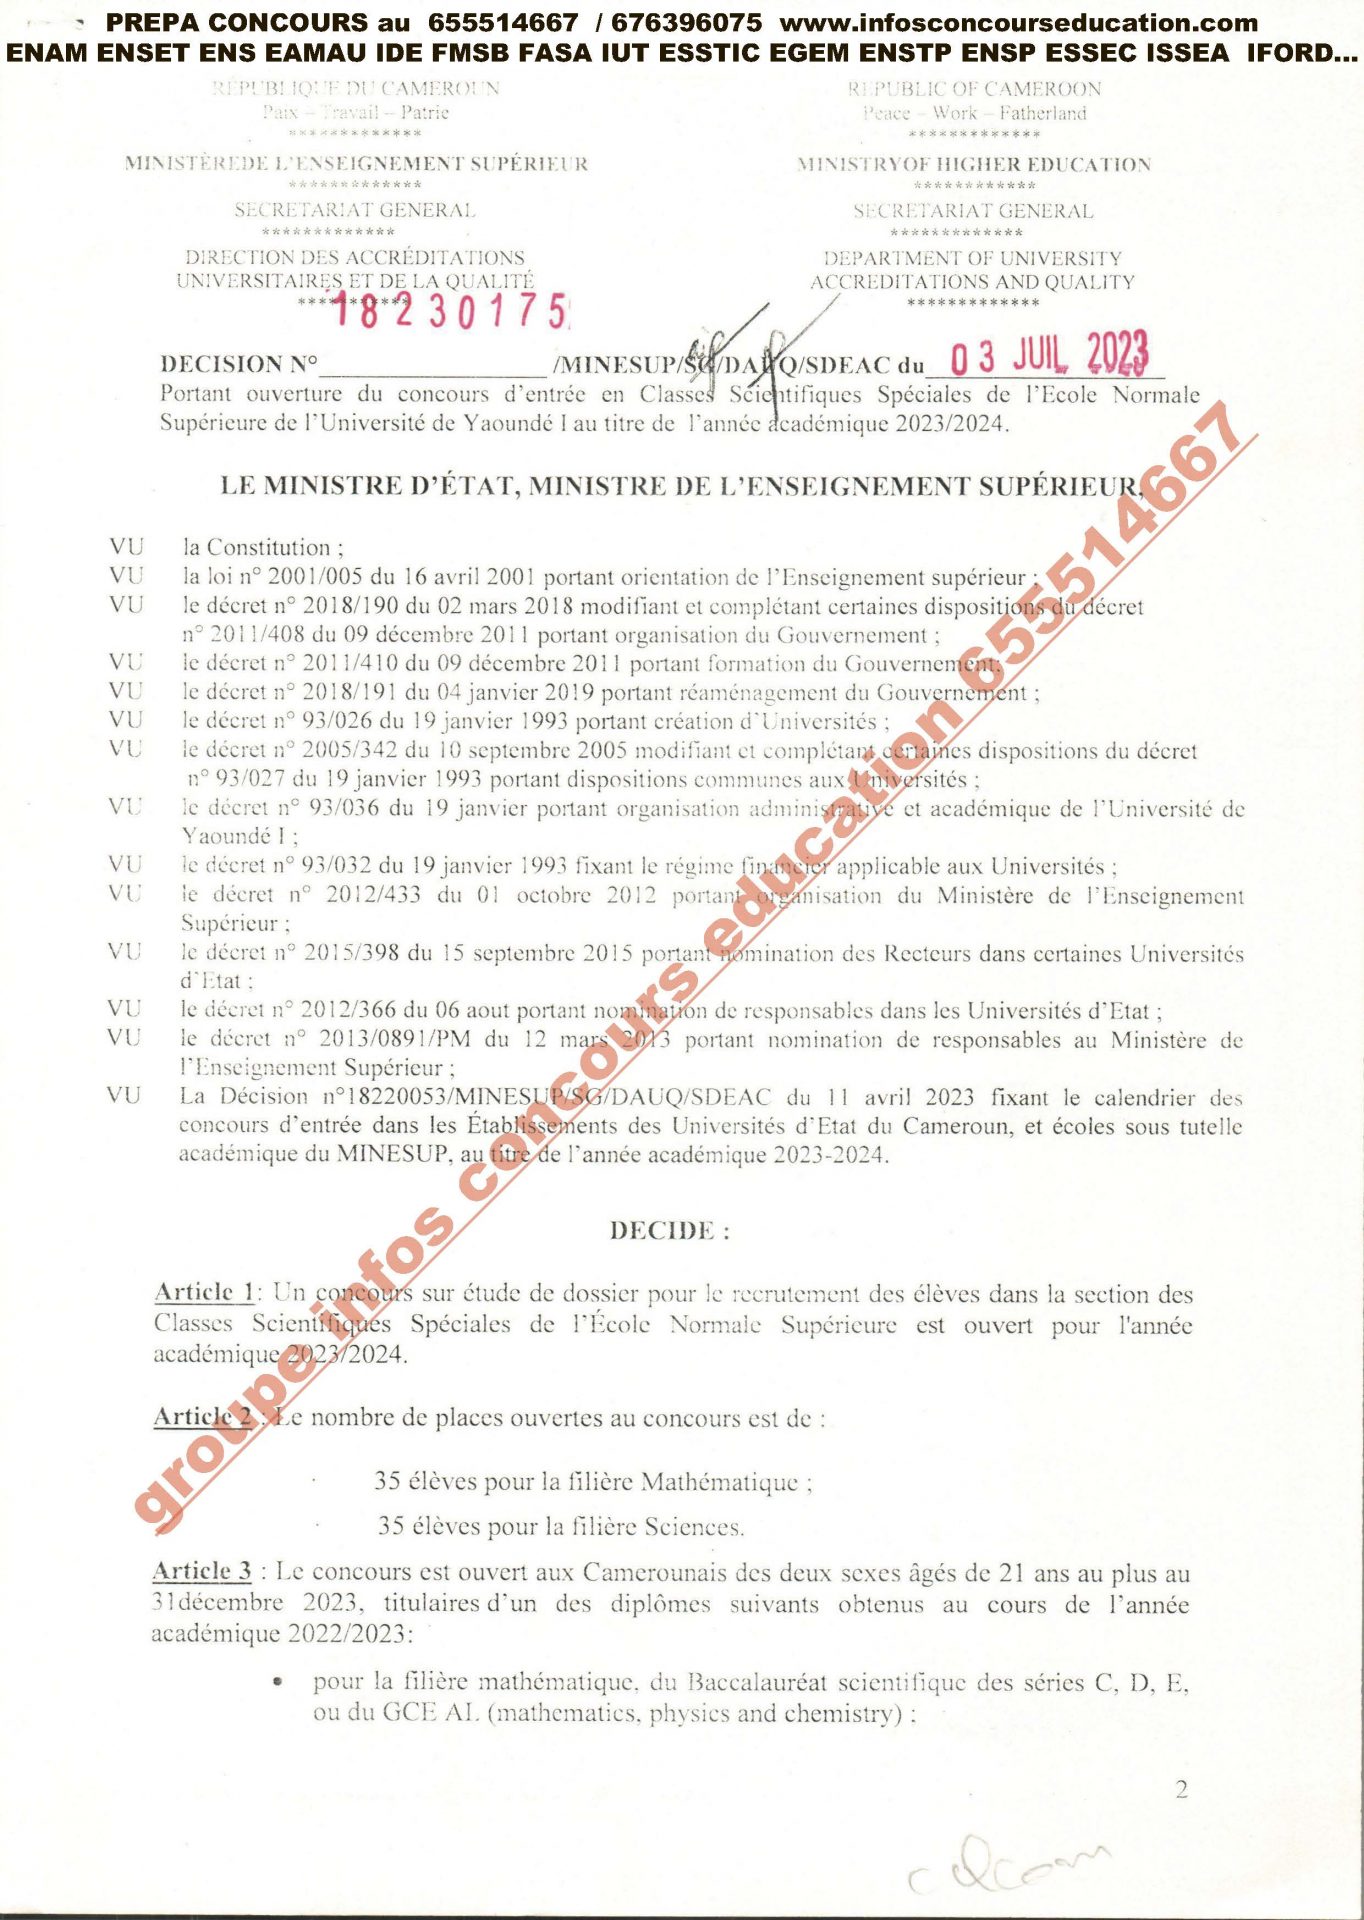 Concours d'entrée en Classes Scientifiques Spéciales de l'Ecole Normale Supérieure de l'Université de Yaoundé I année académique 2023.